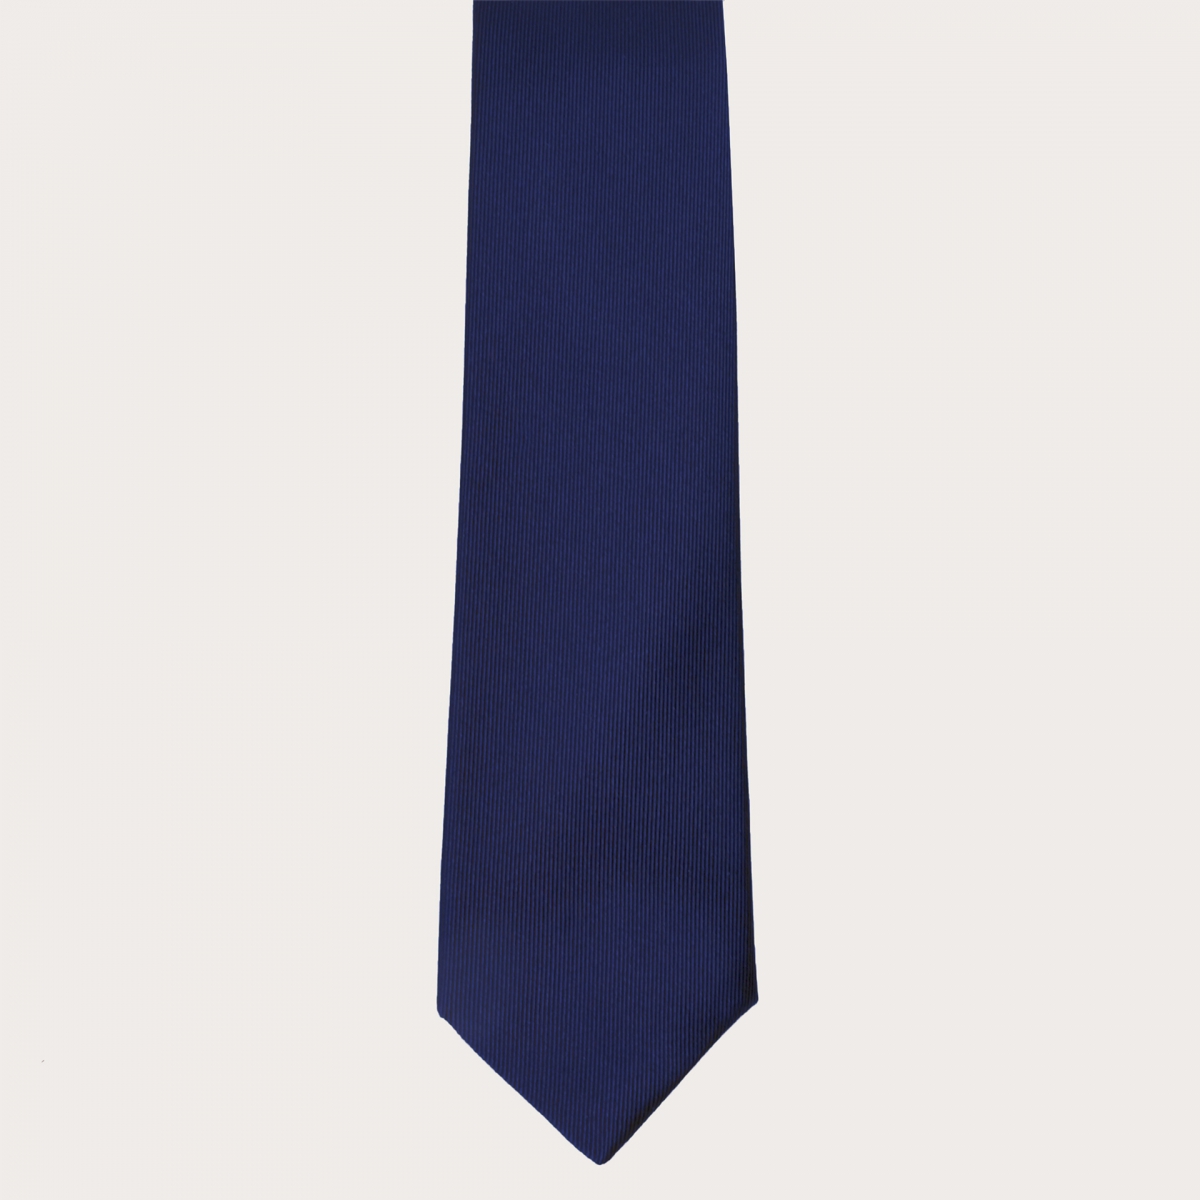 BRUCLE Bretelle e cravatta coordinate in seta jacquard, blu